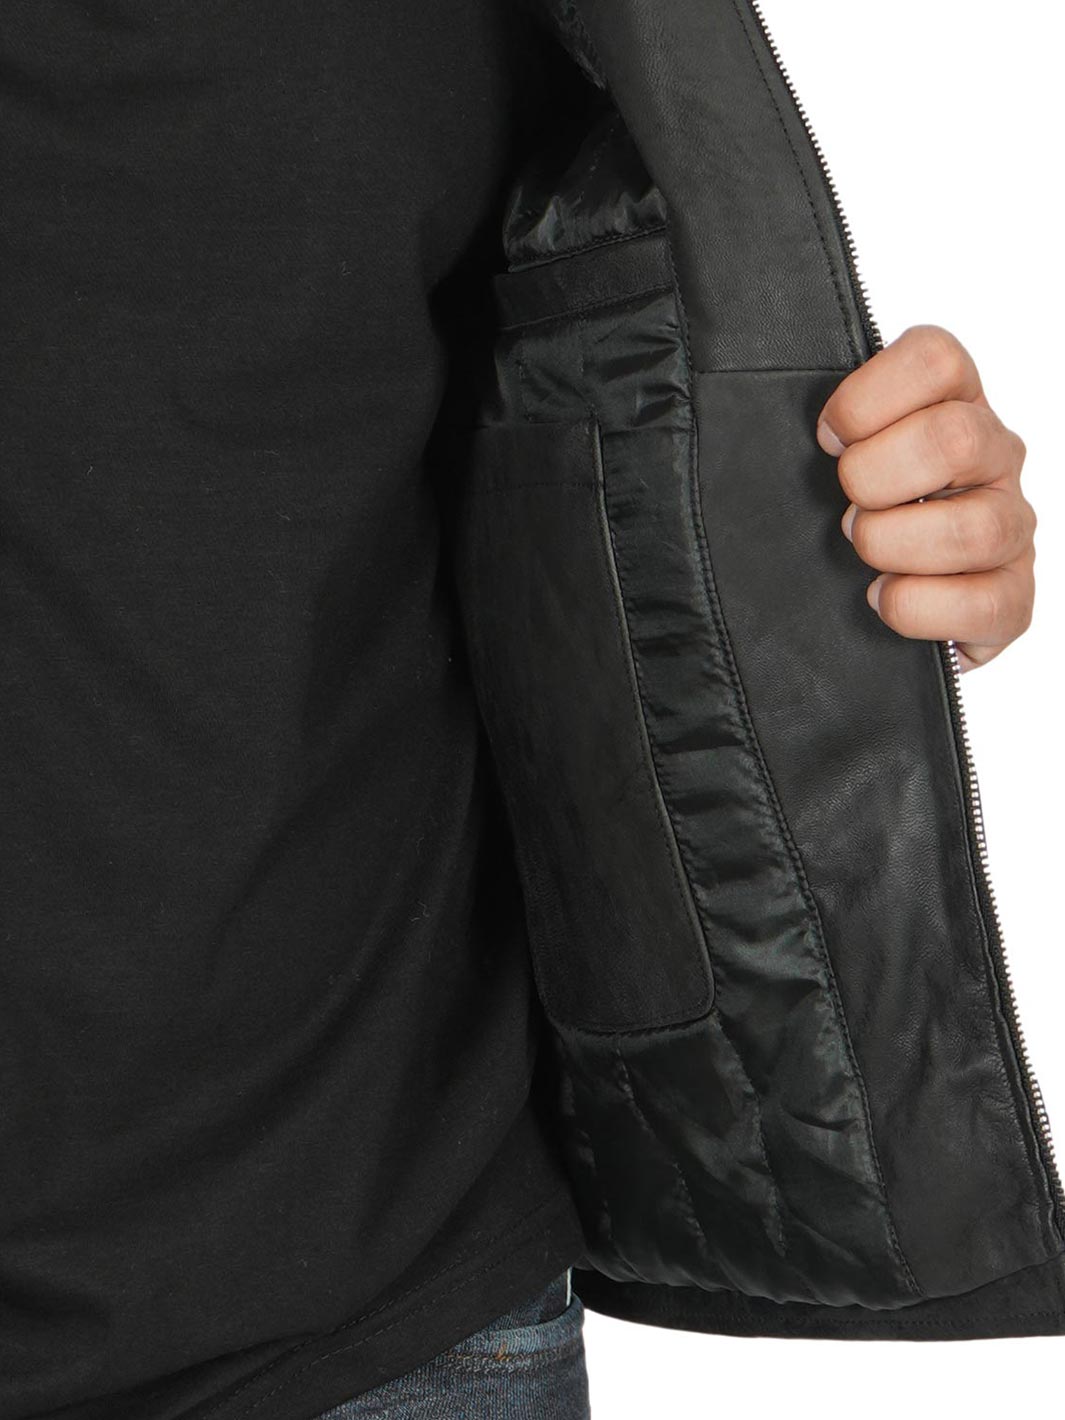 Dodge Men's Black Cafe Racer Snuff Leather Jacket